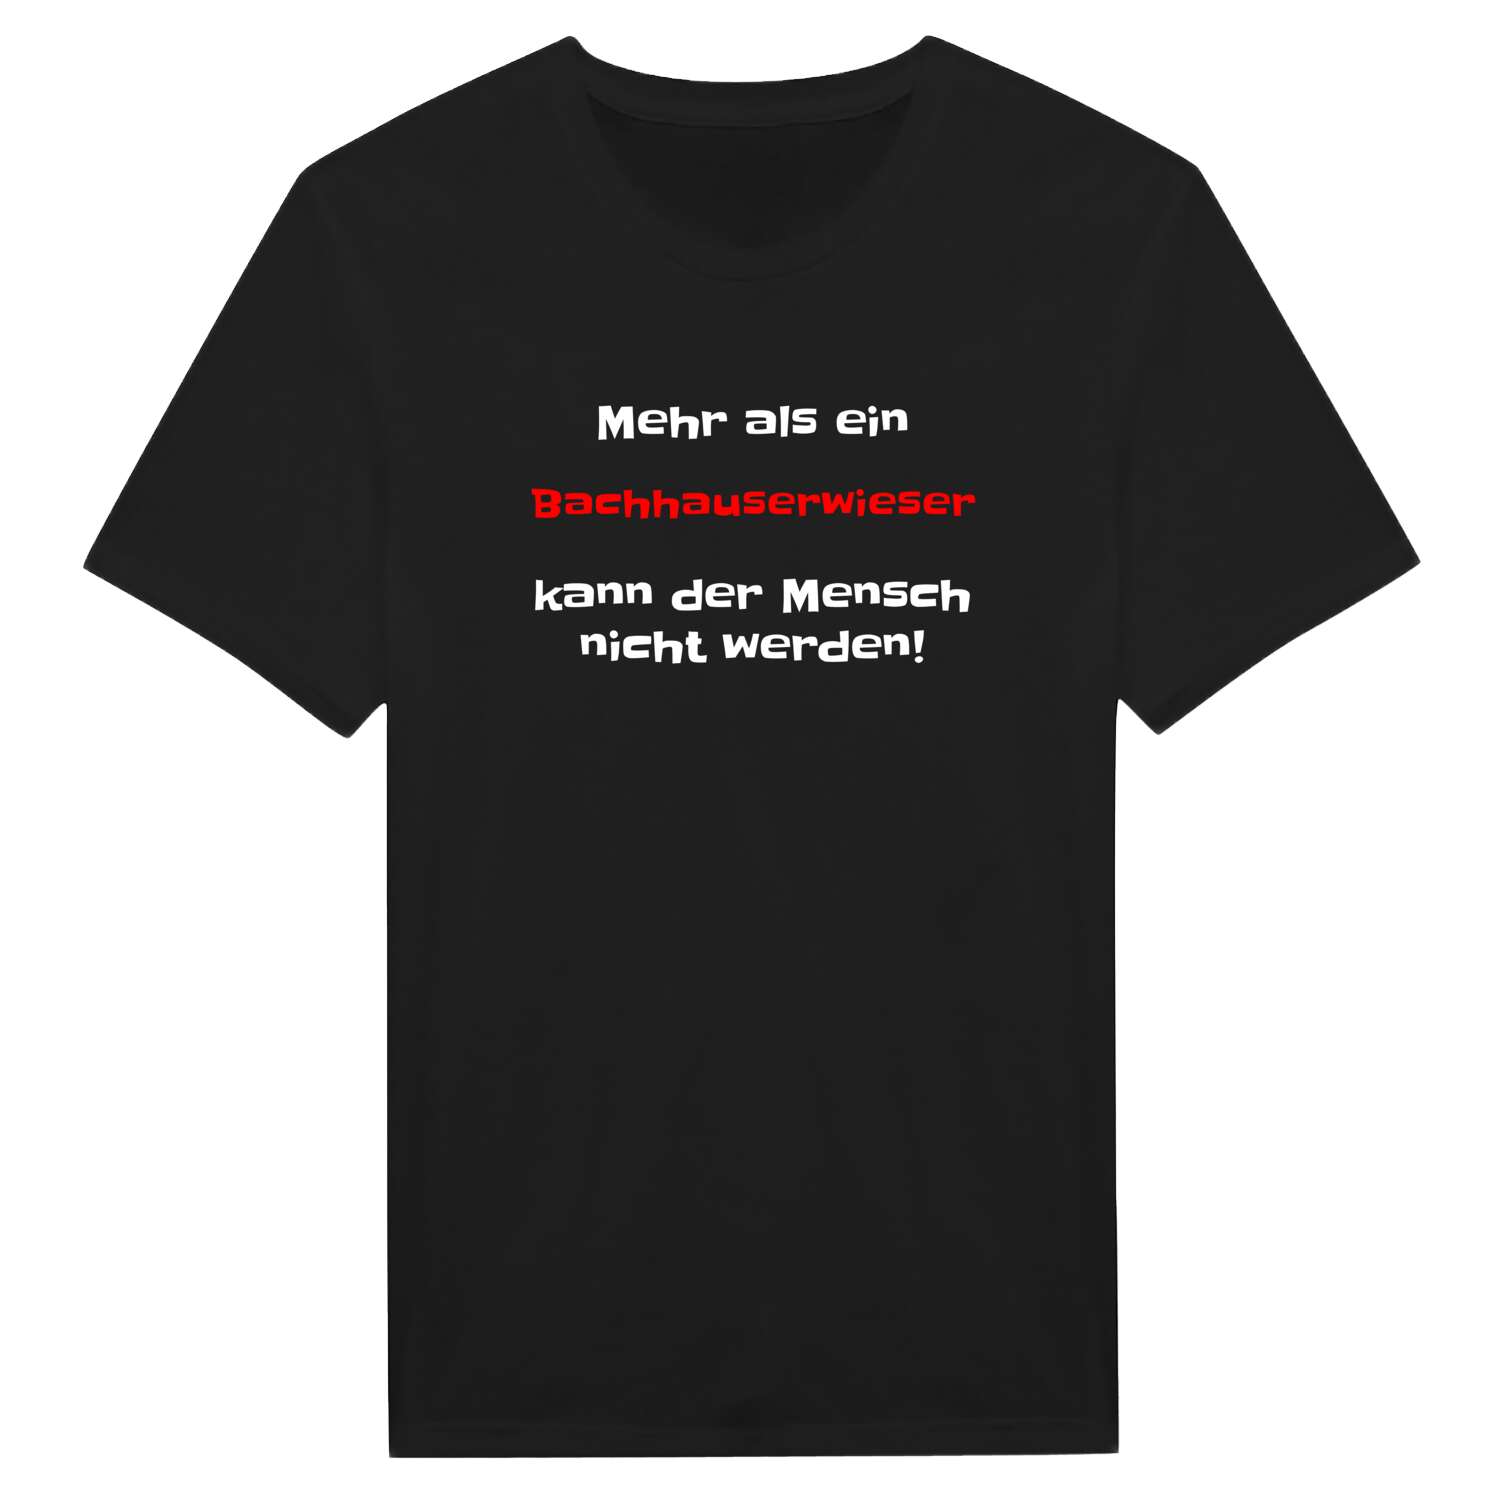 Bachhauserwies T-Shirt »Mehr als ein«